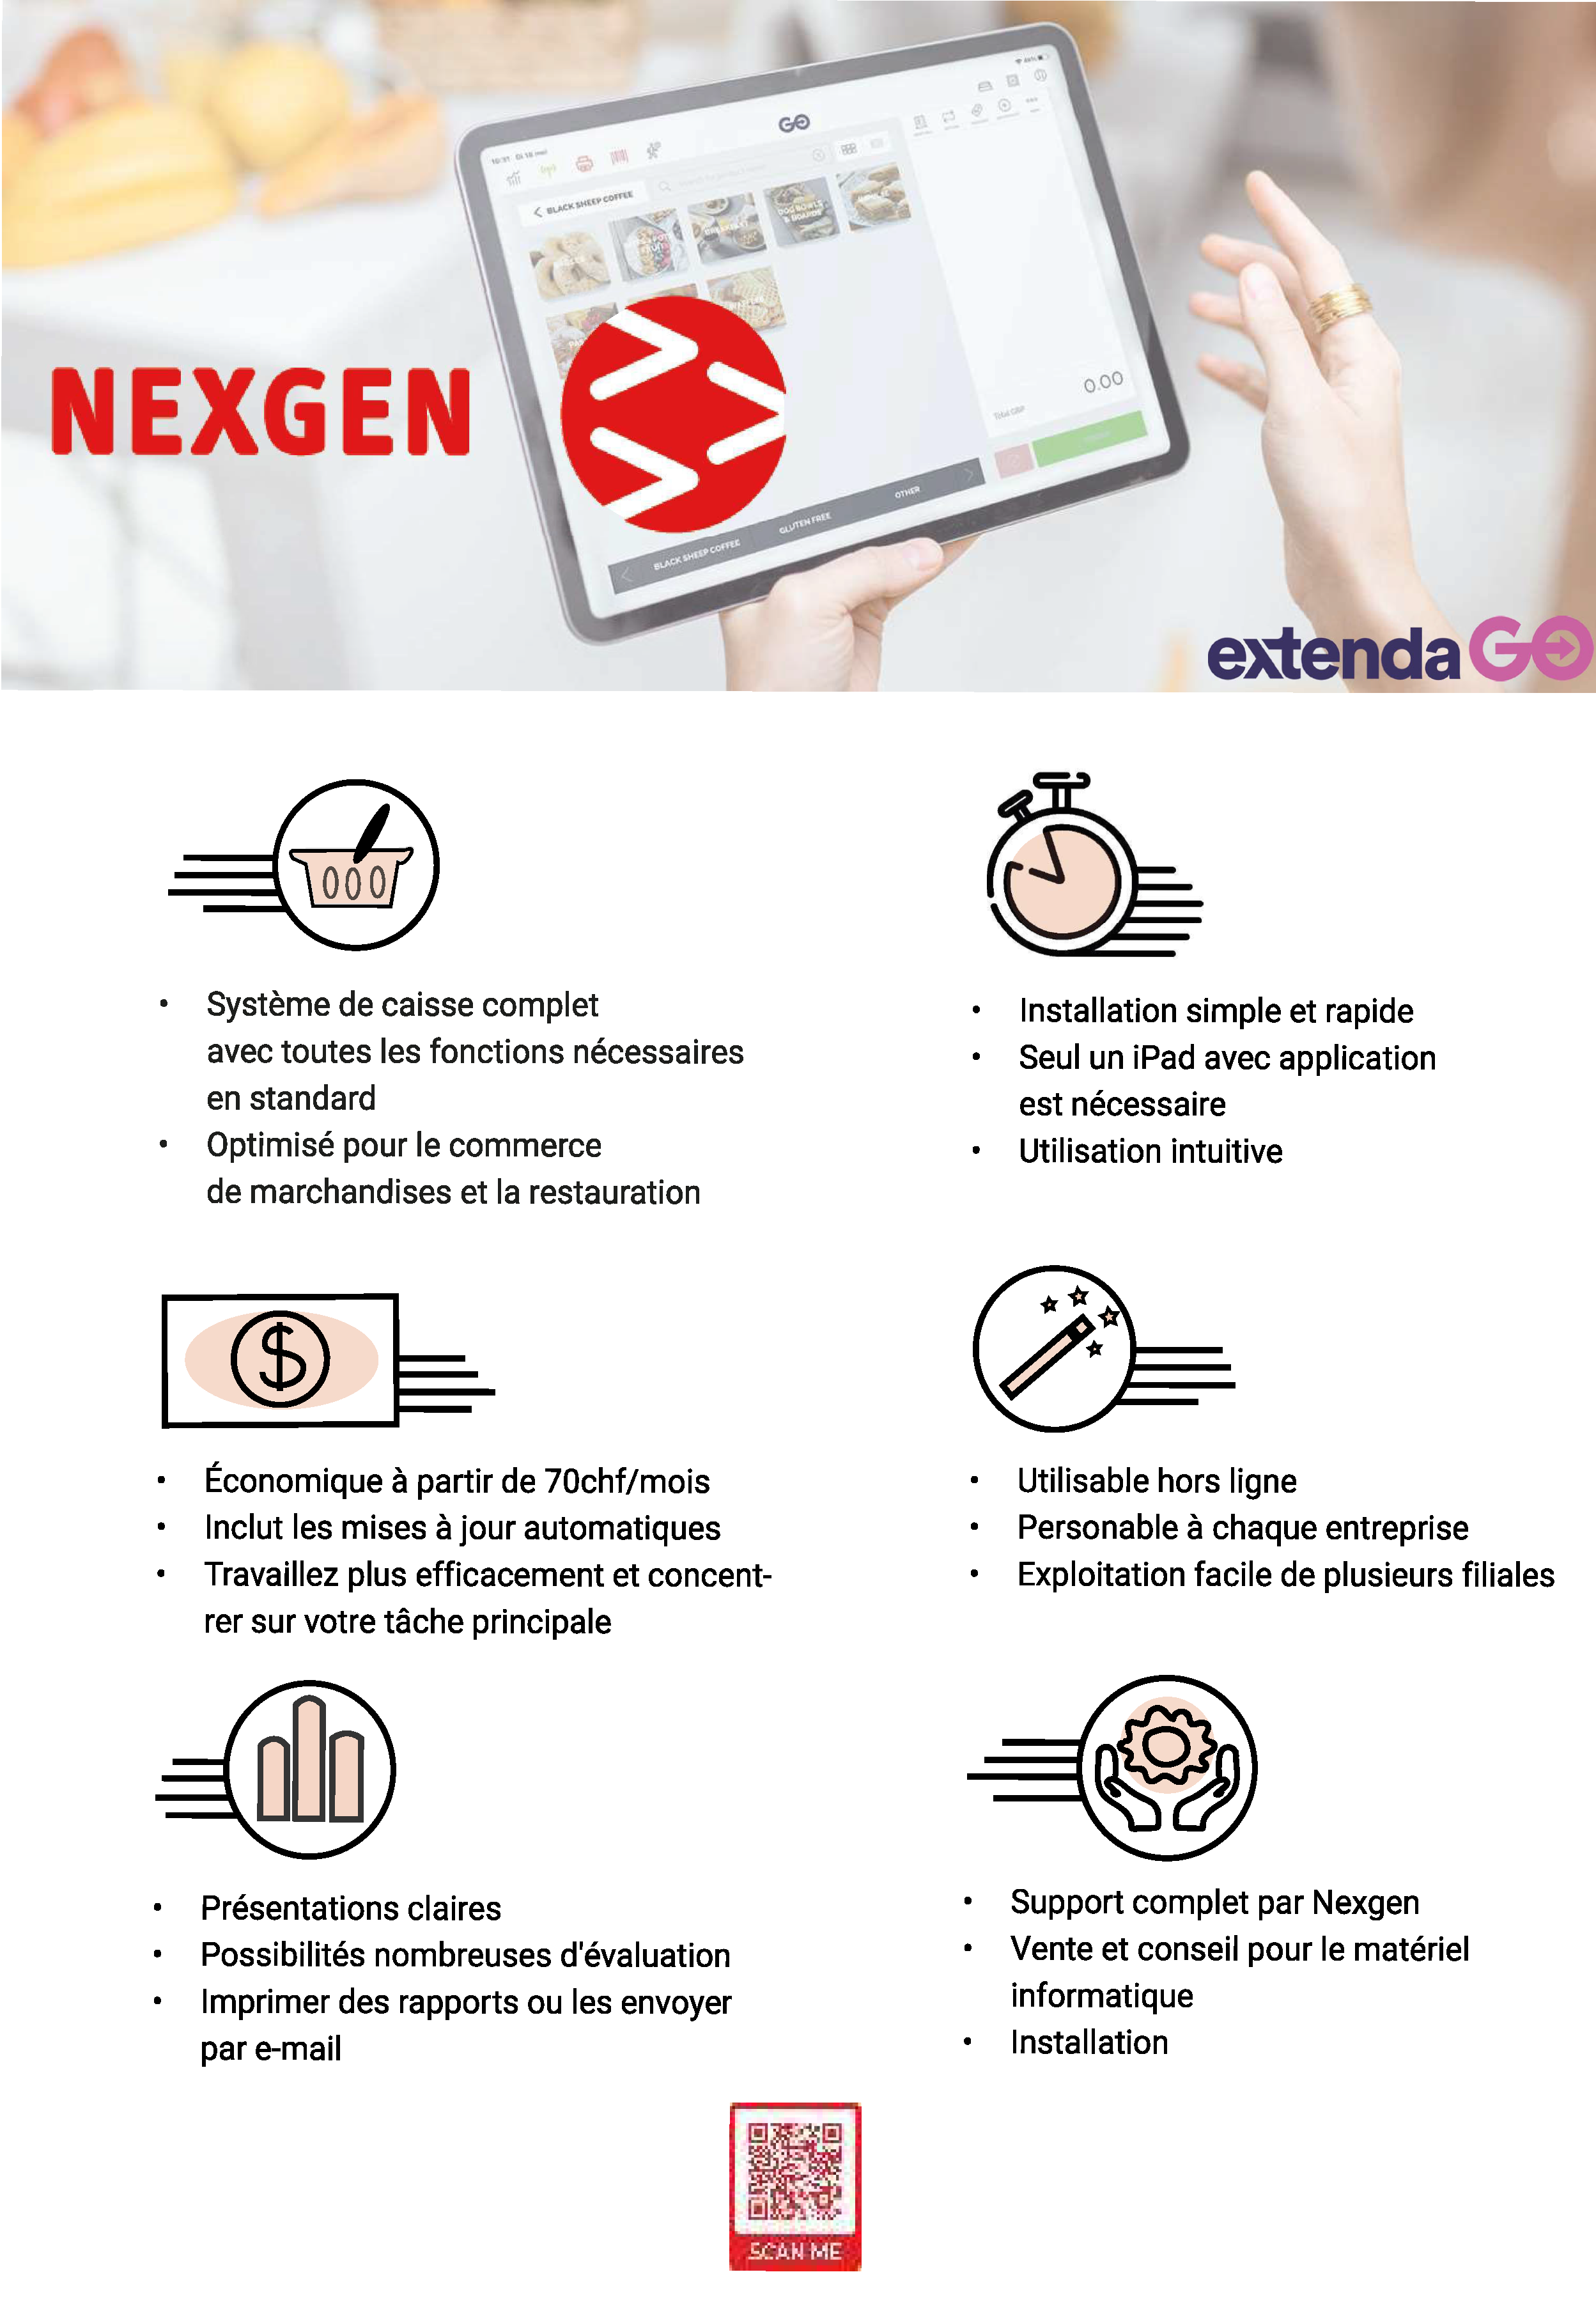 Nexgen et ExtendaGO